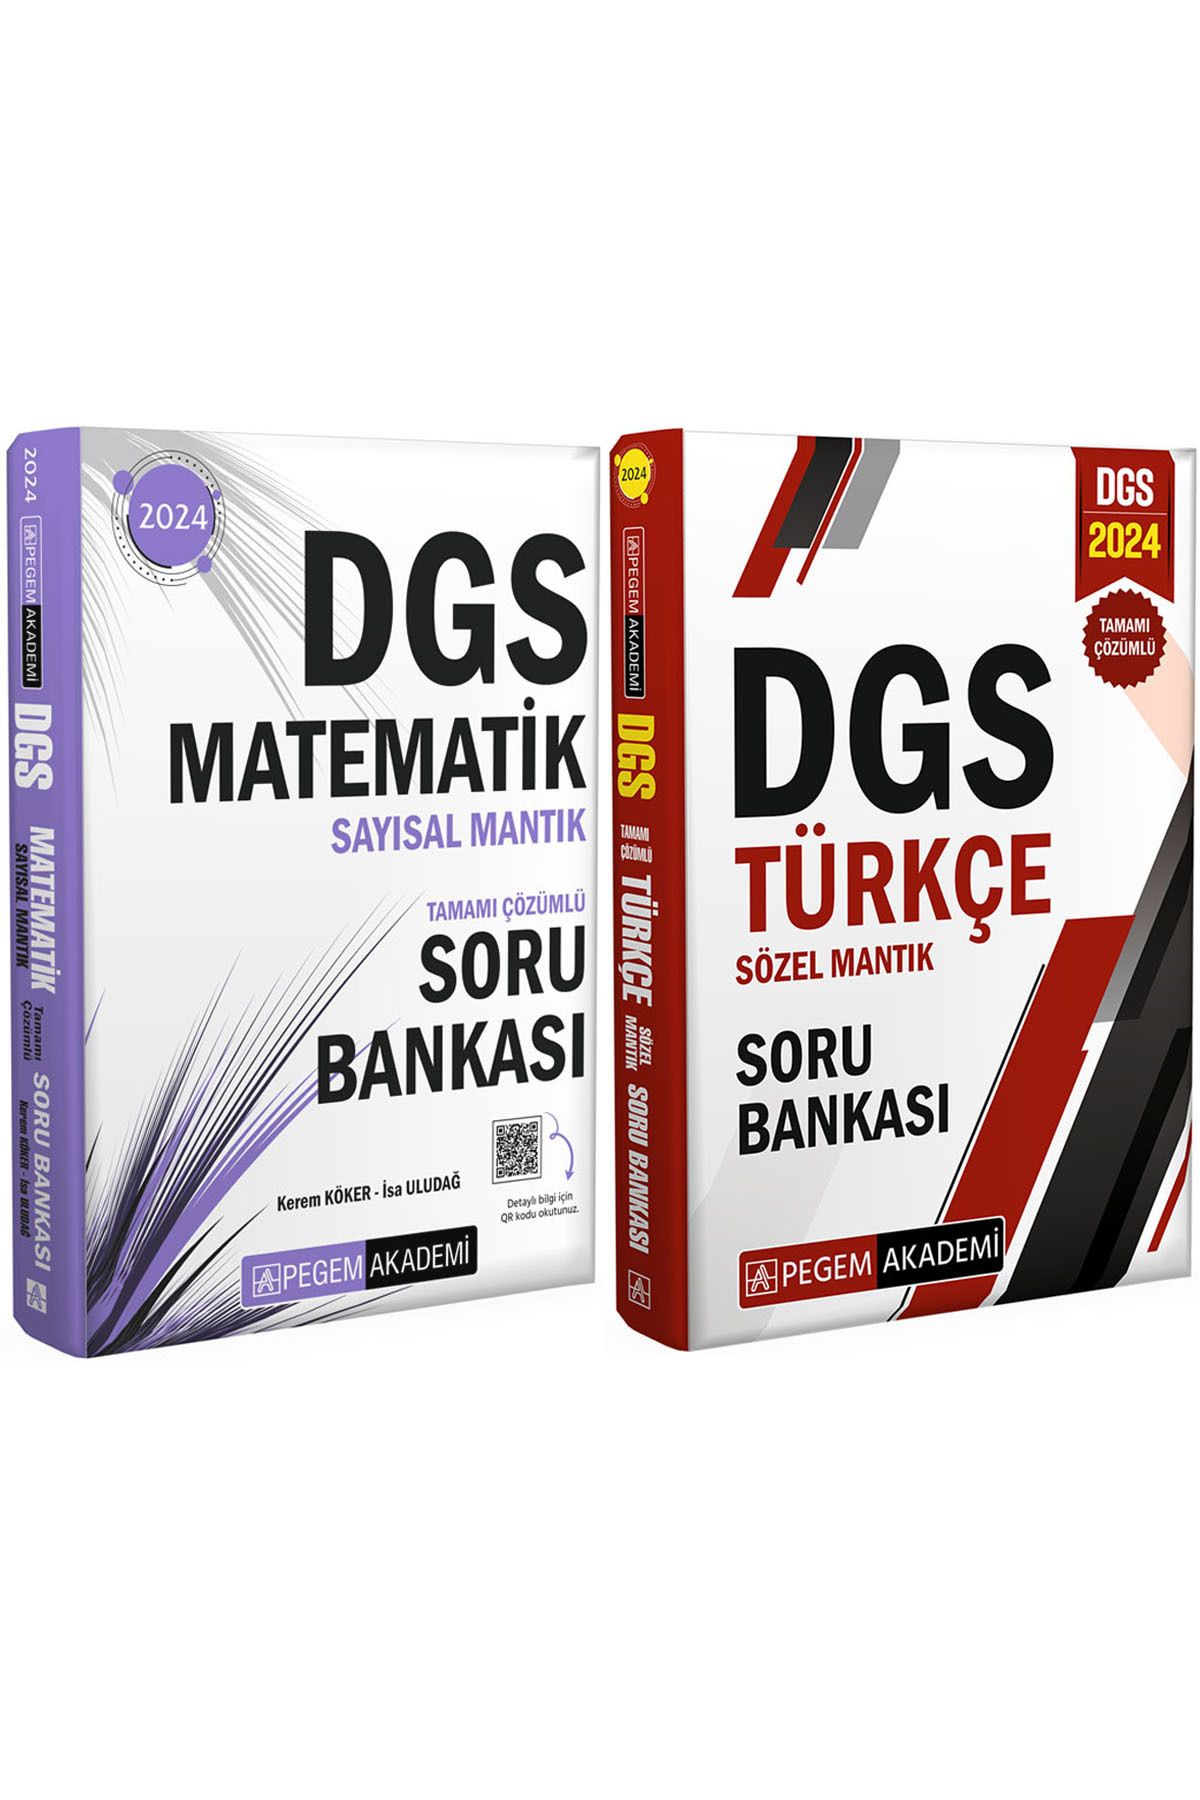 Pegem Akademi Yayıncılık DGS 2024 Türkçe Tamamı Çözümlü Sözel Mantık ve Tamamı Çözümlü Matematik Sayısal Mantık Soru Bankası